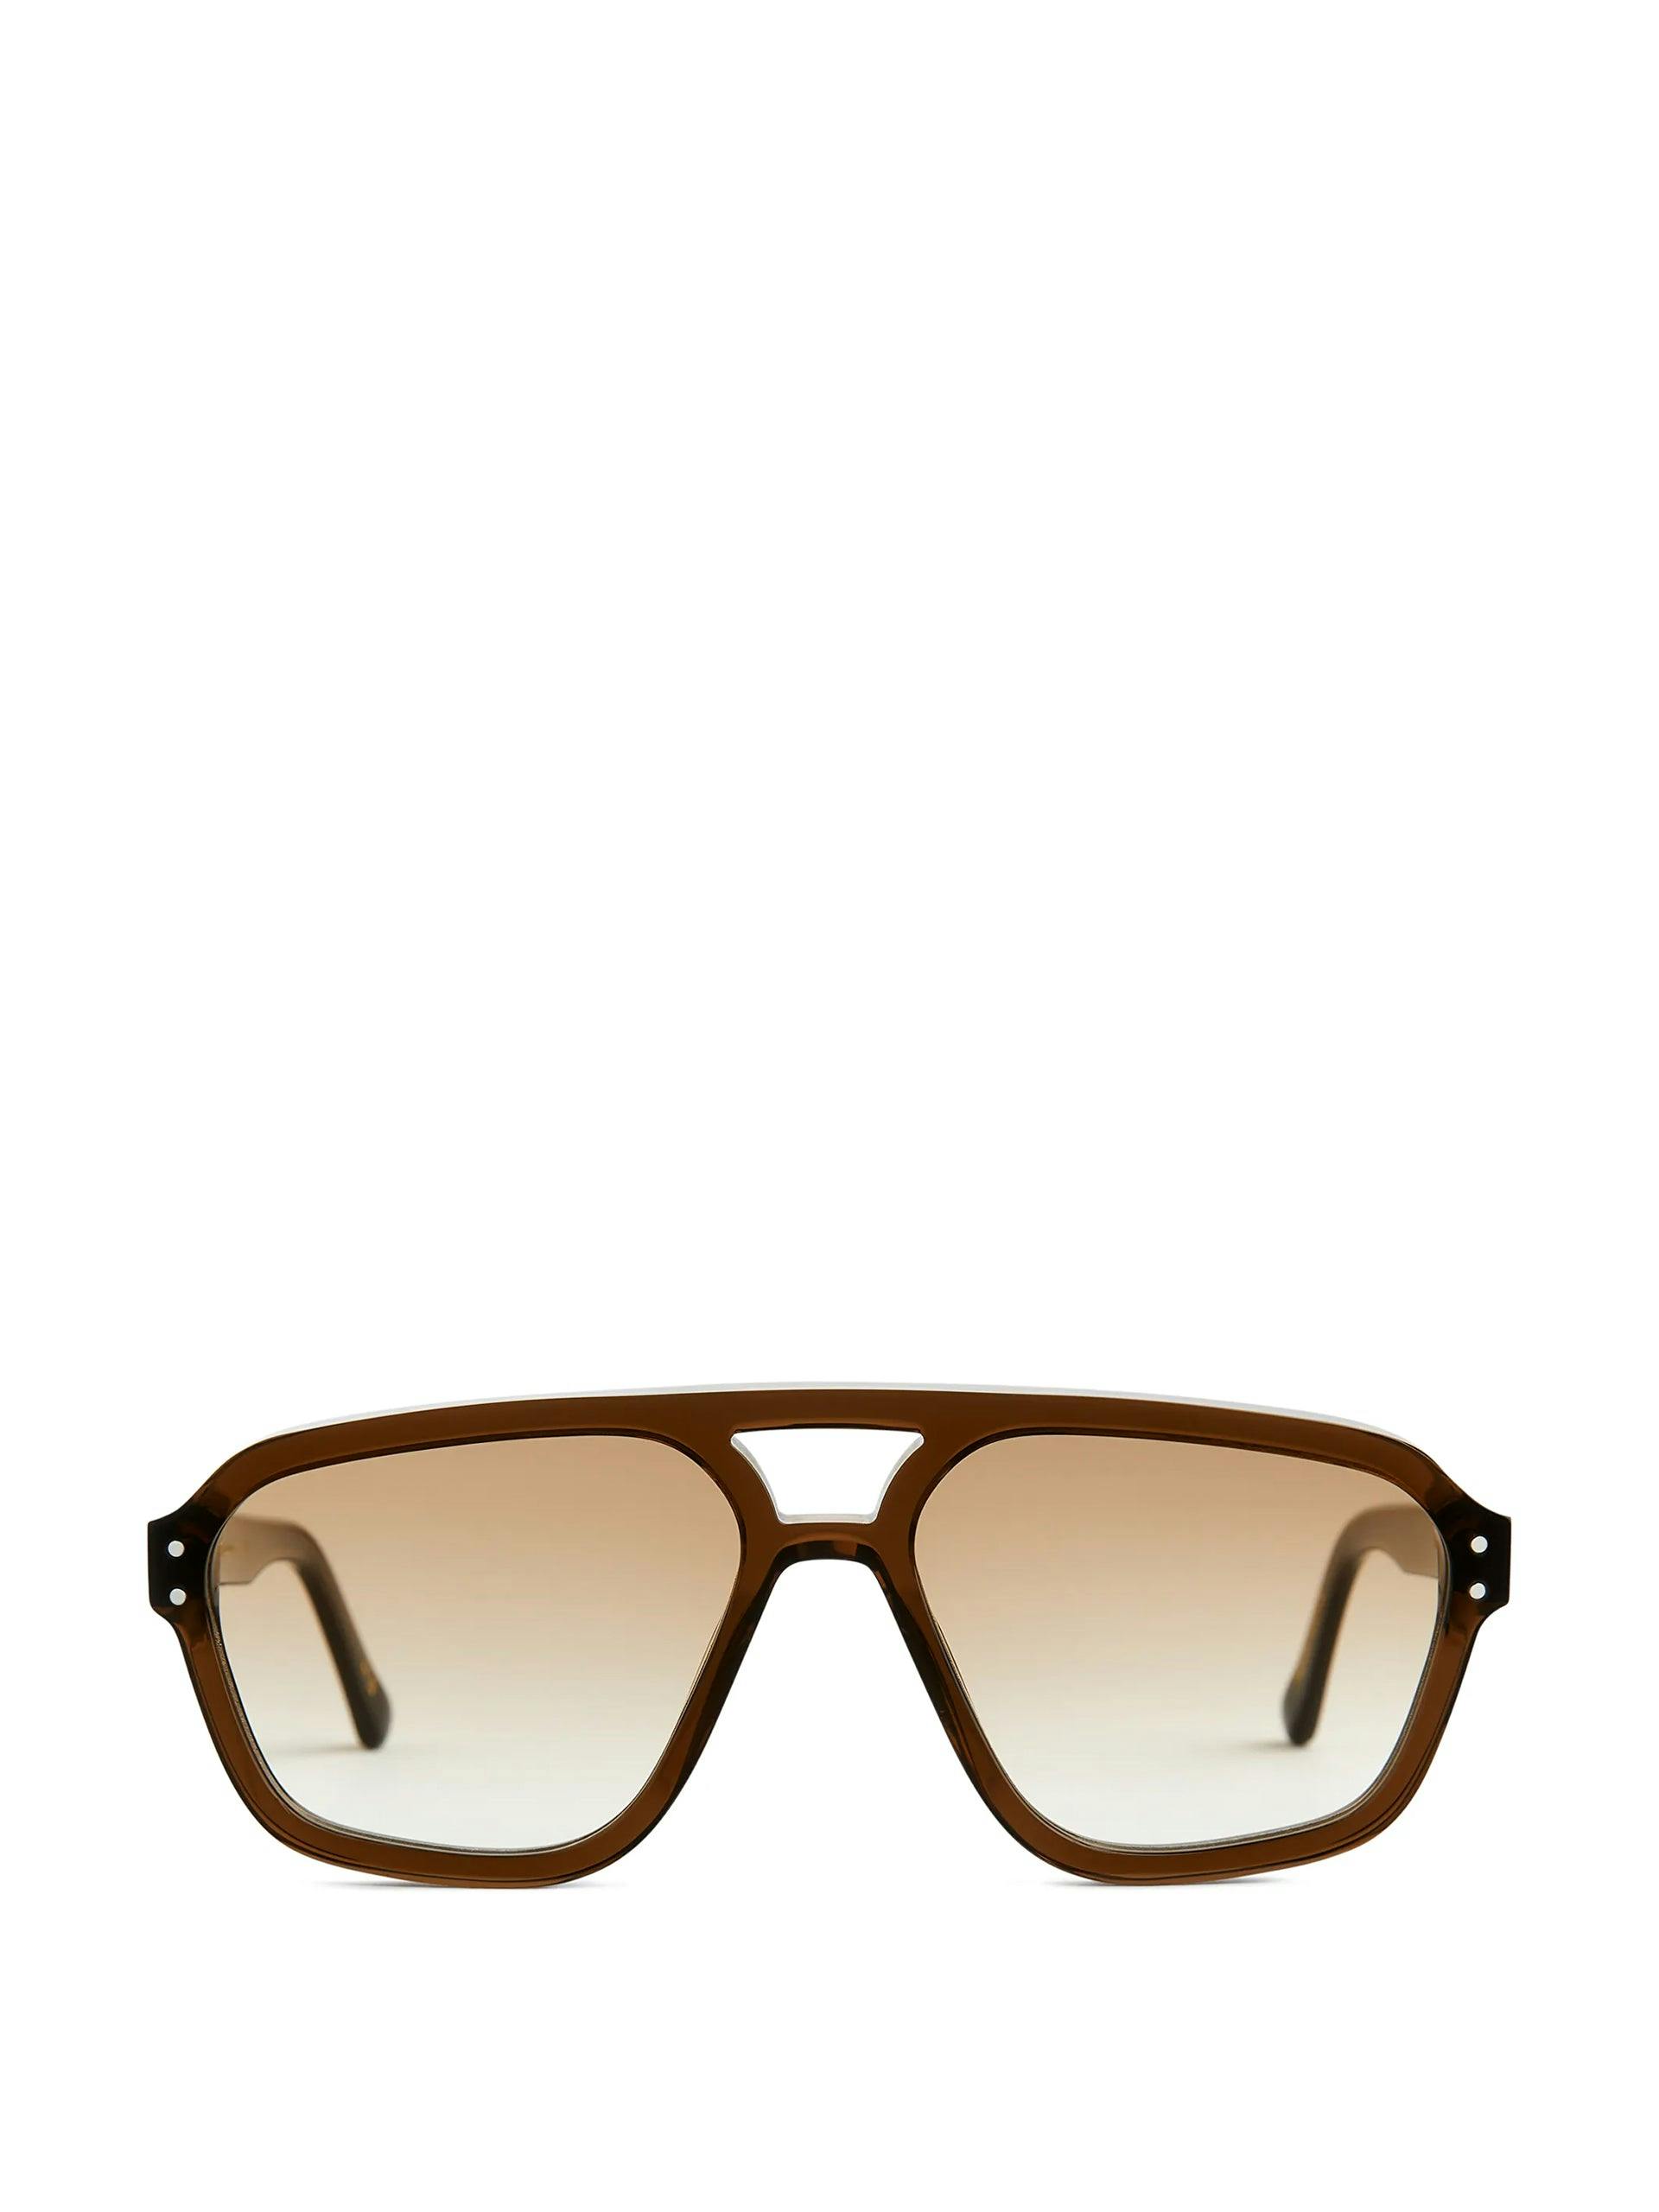 Monokel jet brown sunglasses